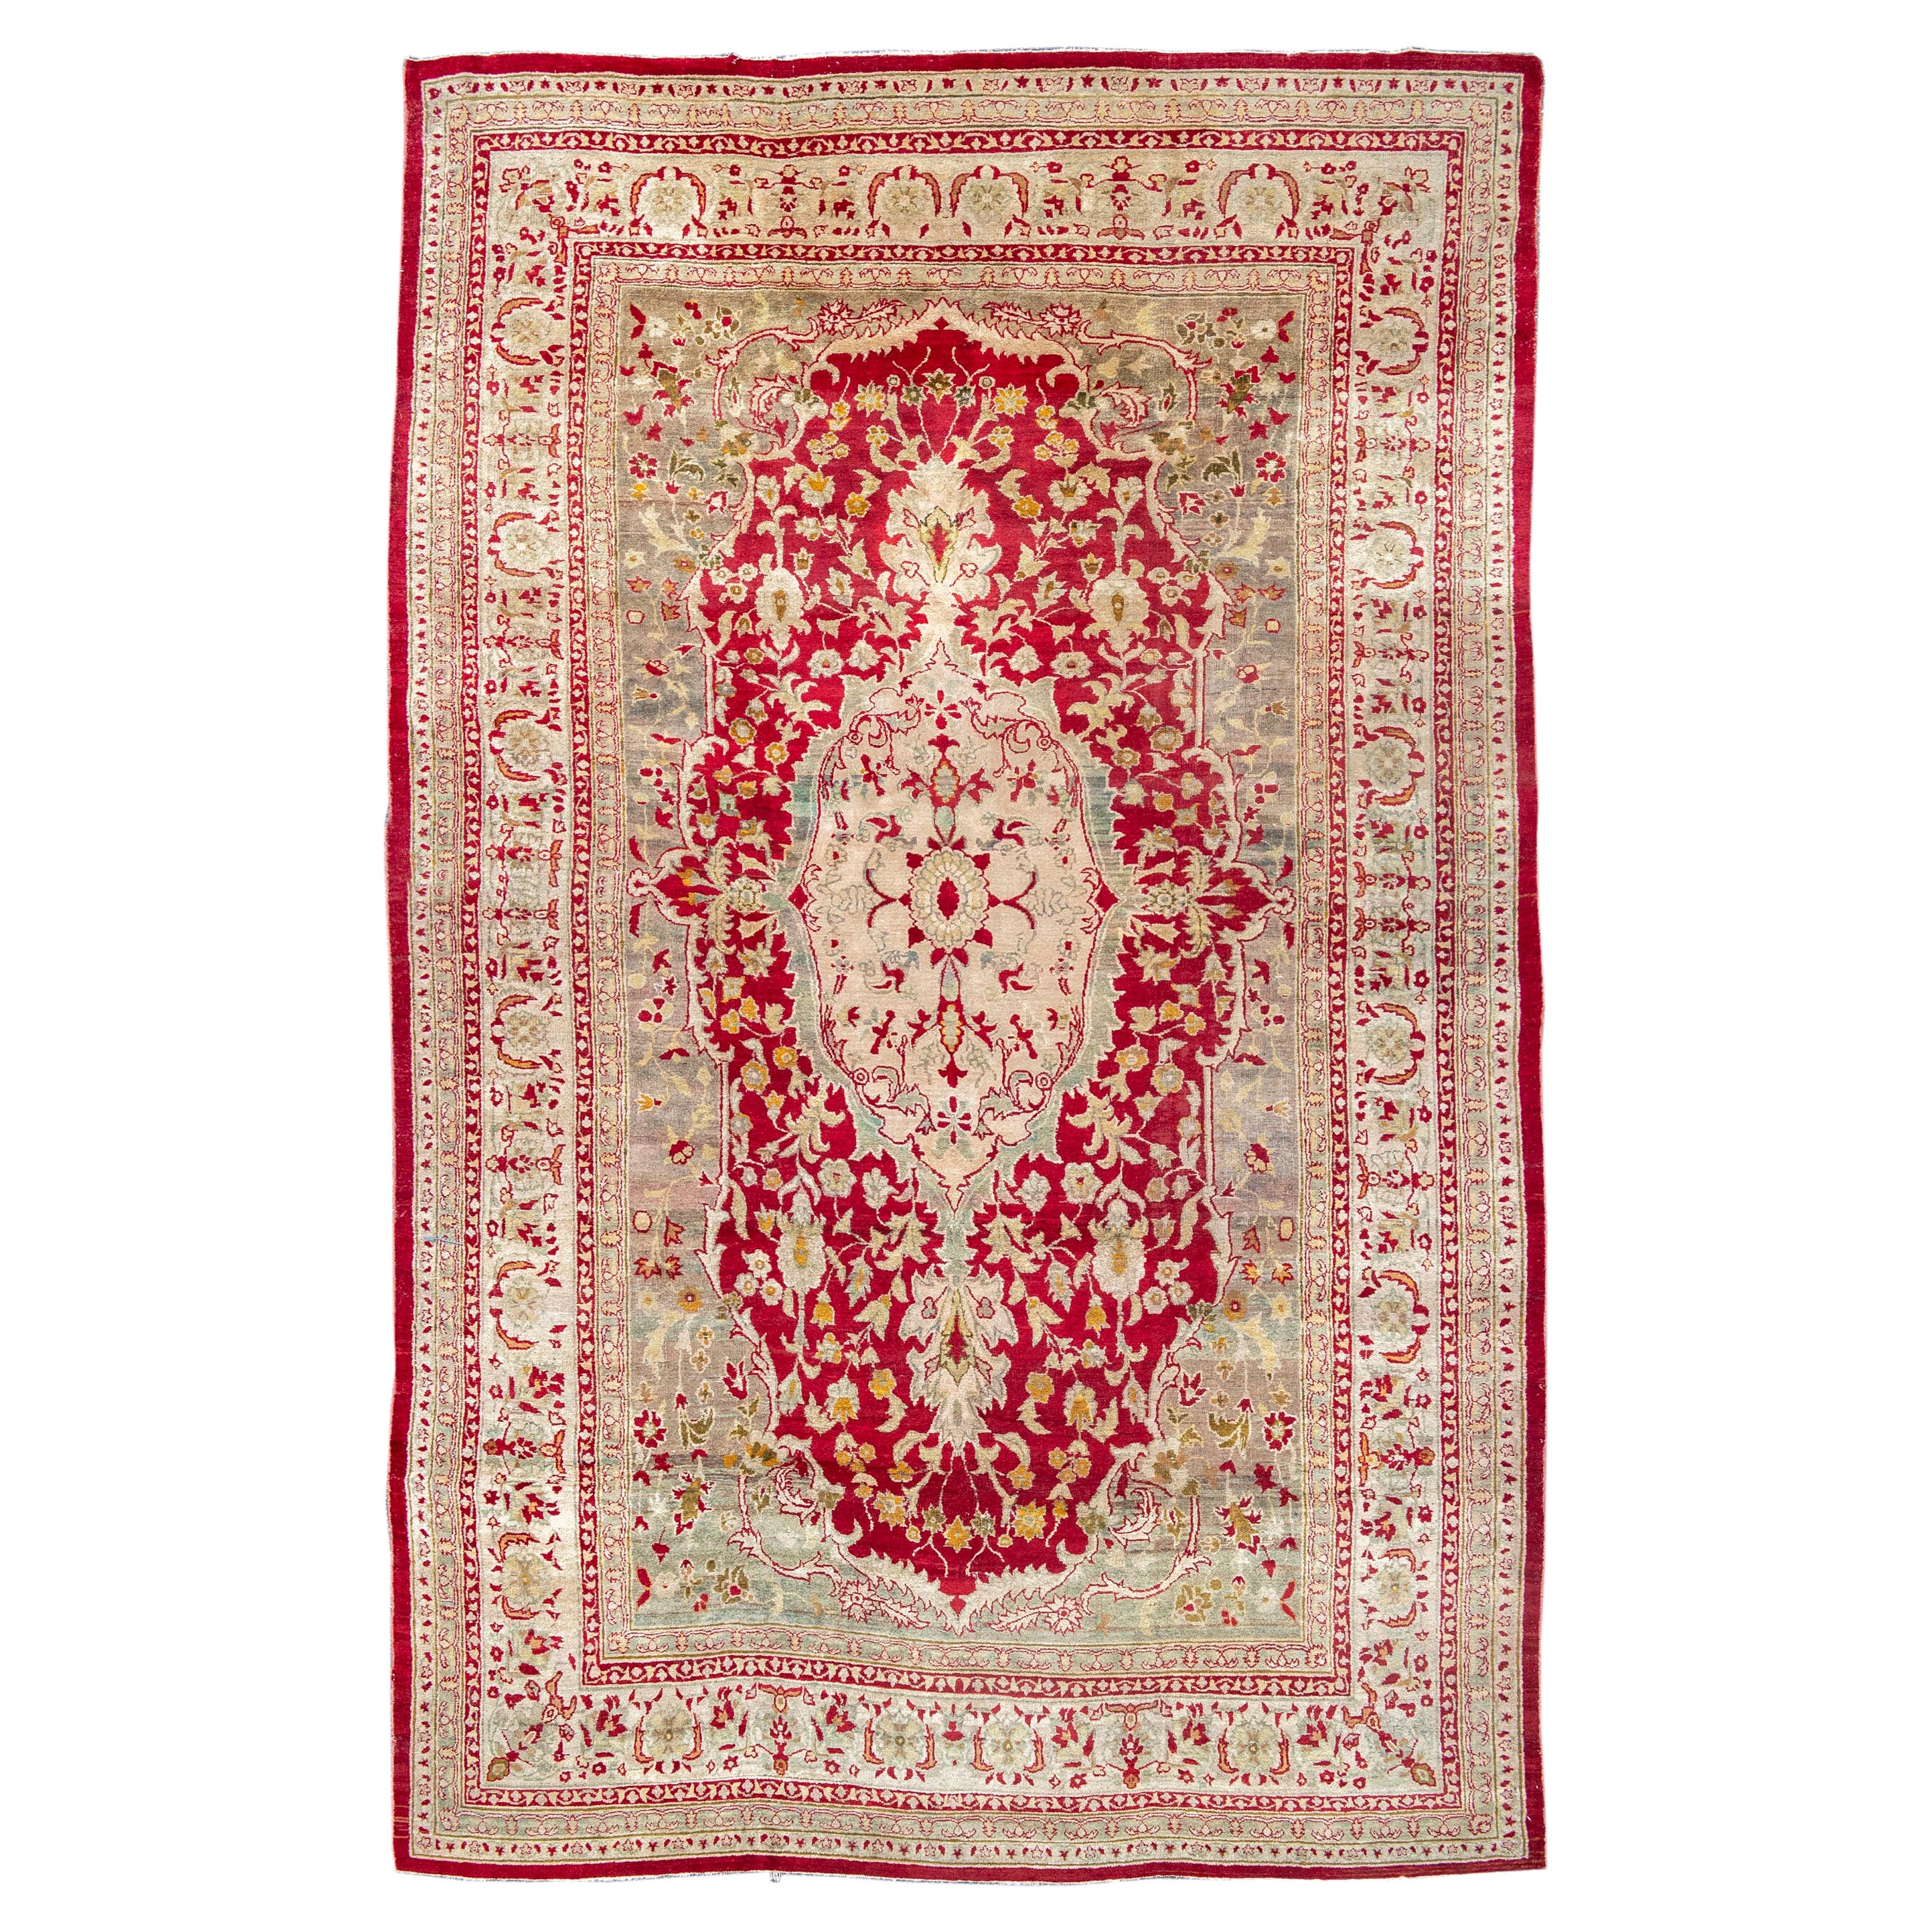 Antiker roter und goldener indischer Agra-Teppich aus dem späten 19. Jahrhundert